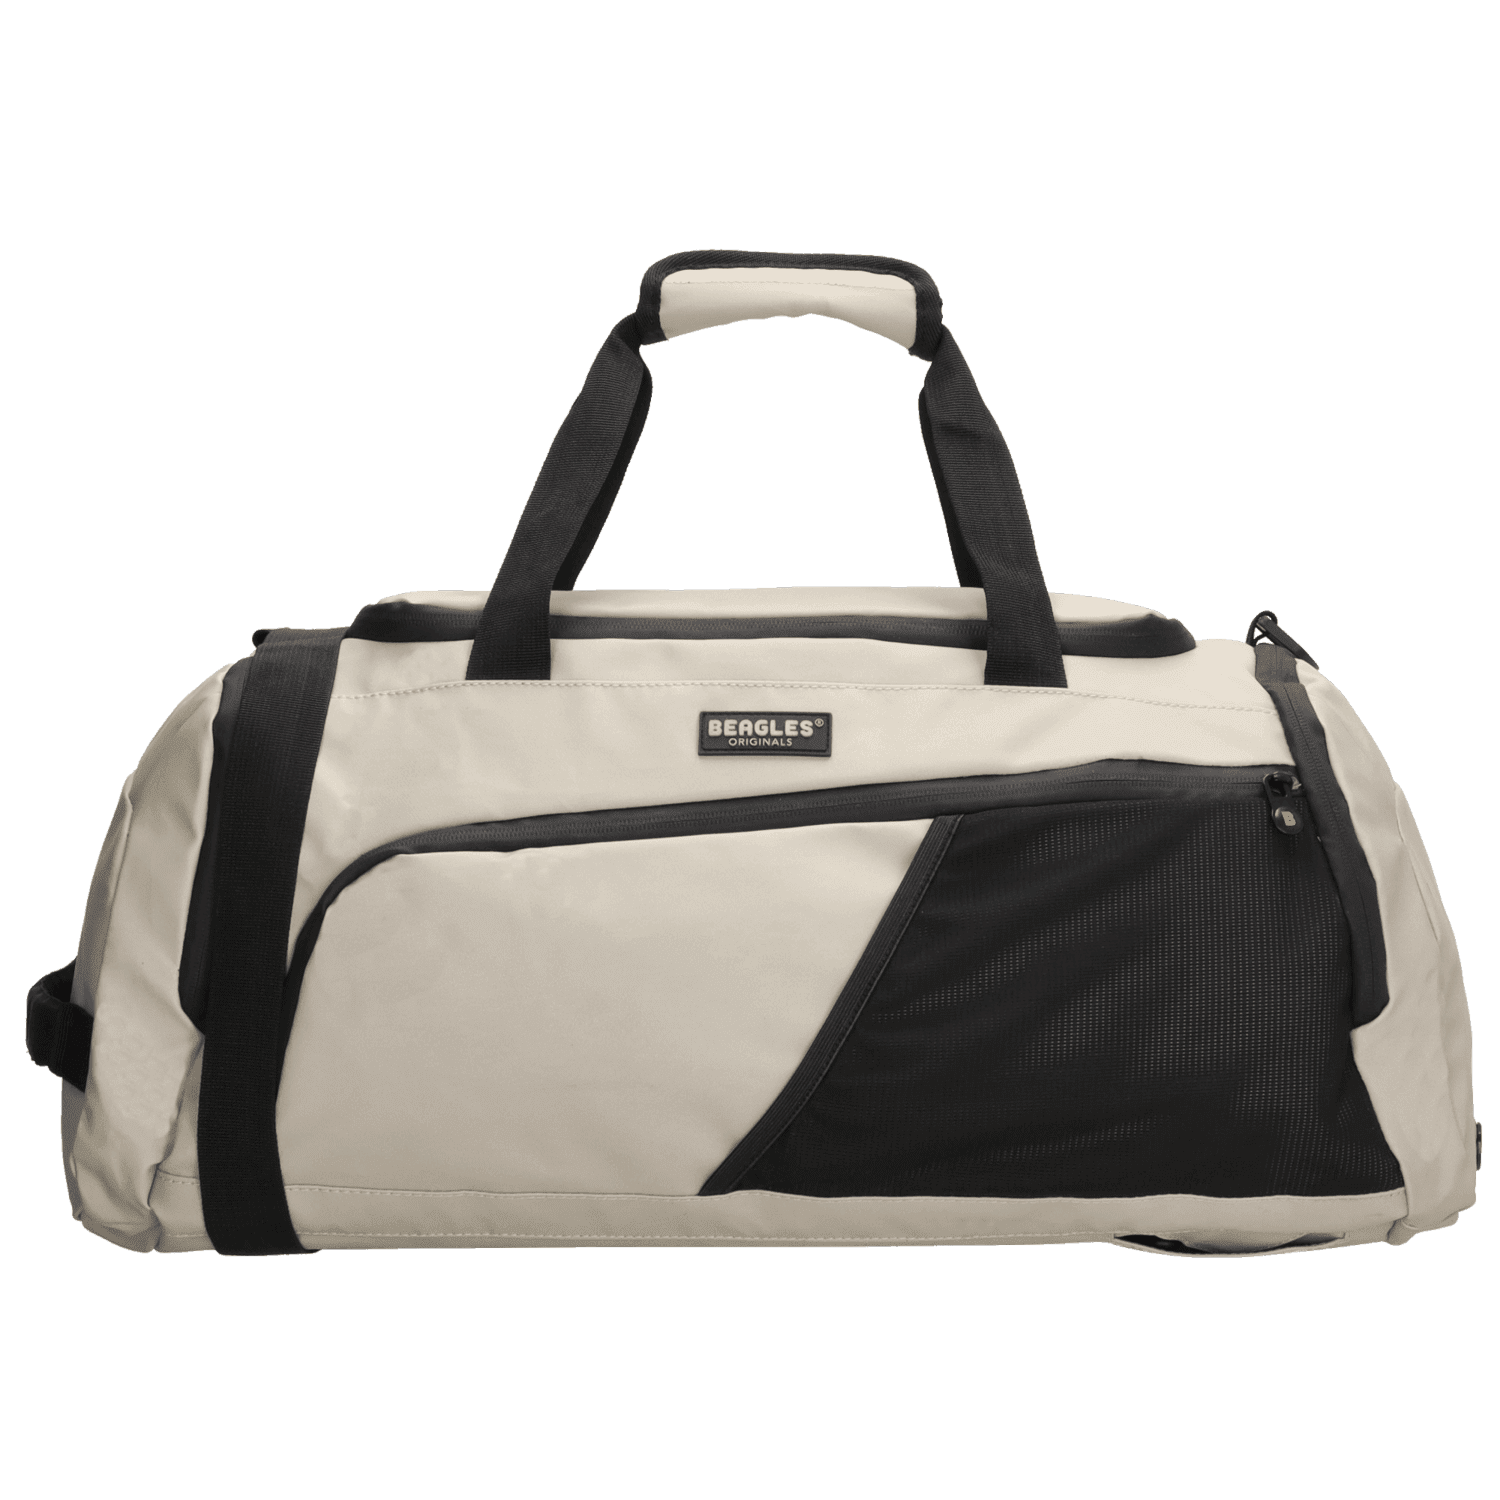 Beagles Originals Waterproof Originals cestovní taška a batoh v jednom - 44L - světlá taupe